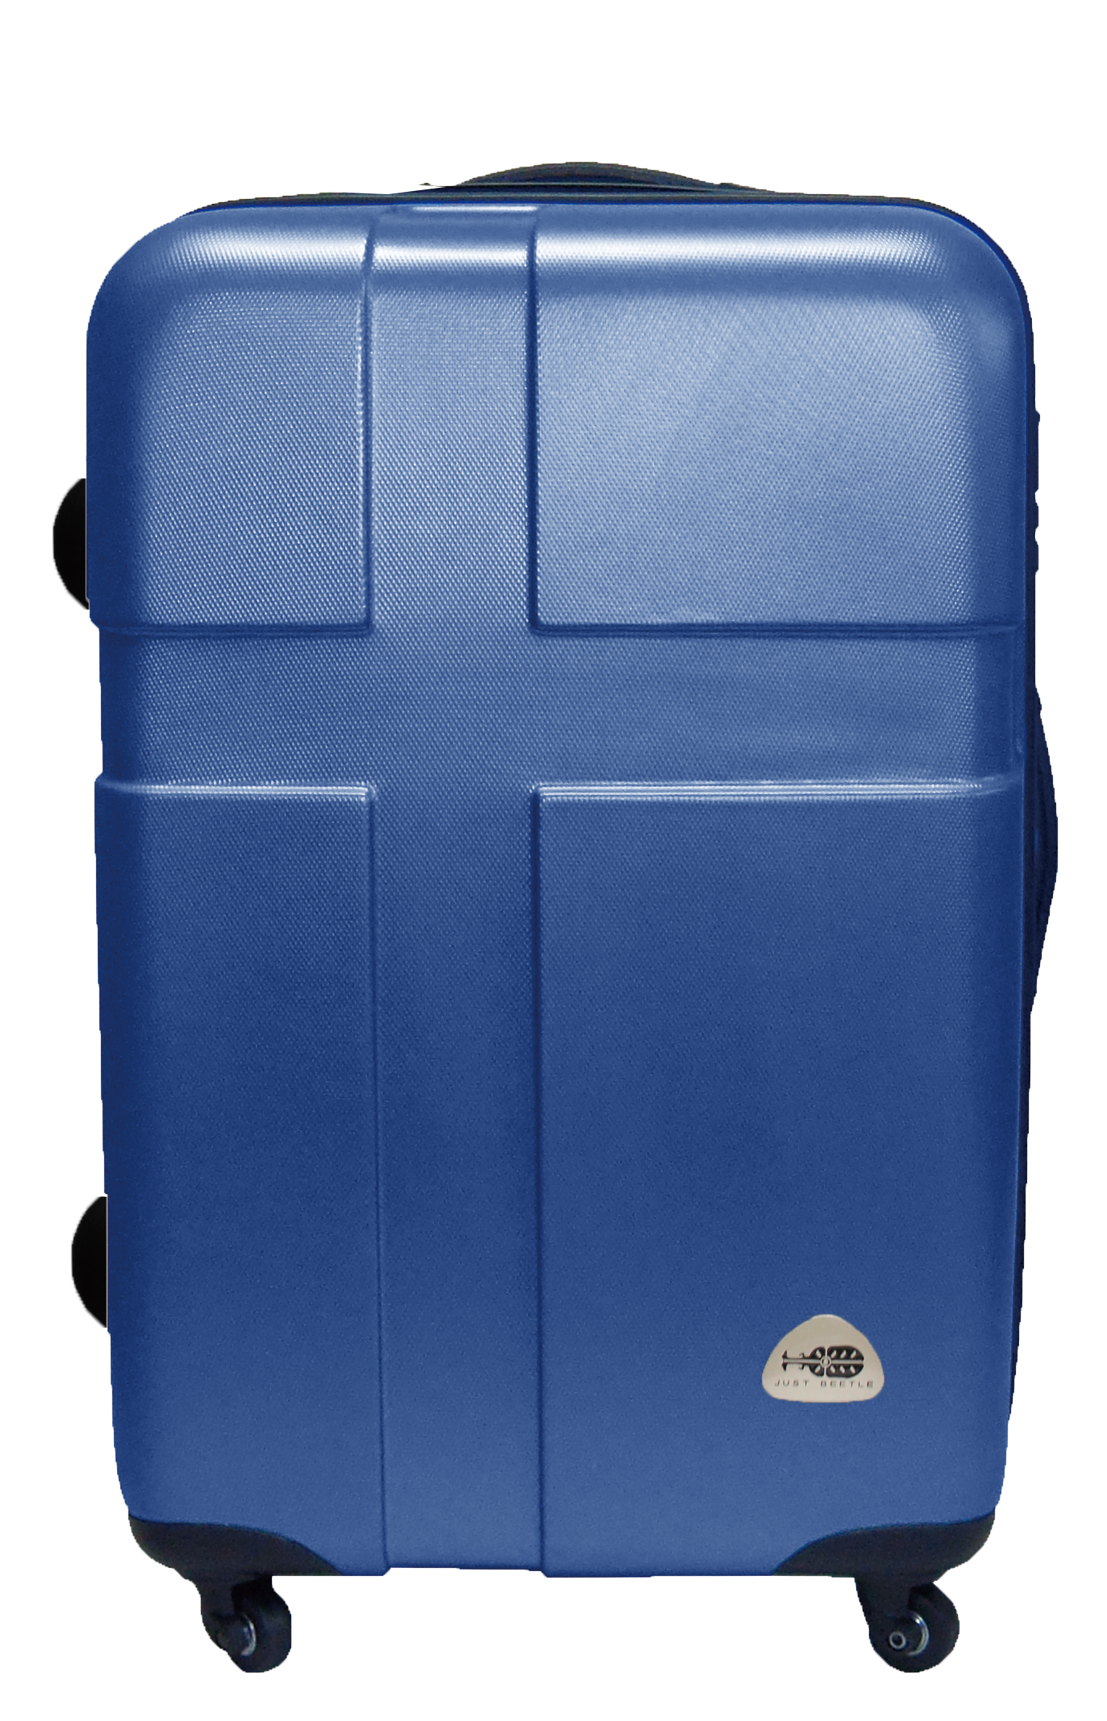 隨機款出清特賣ABS材質24吋輕硬殼 旅行箱 行李箱 登機箱